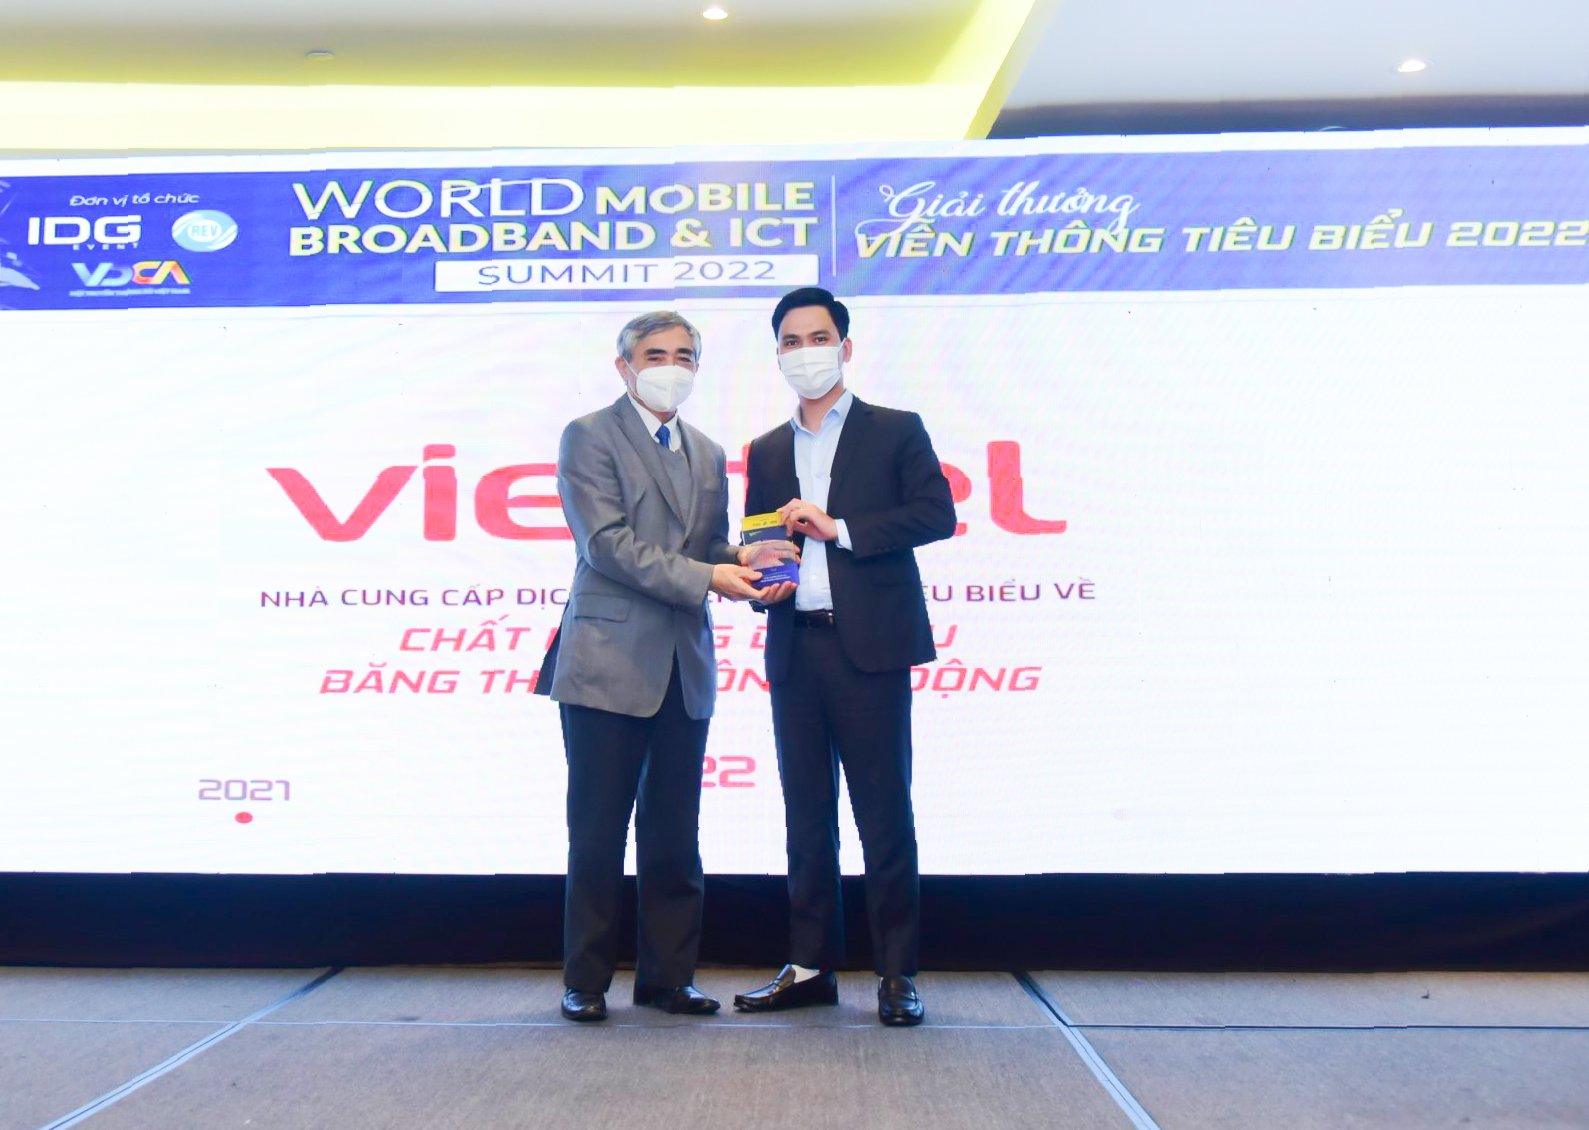 Viettel đạt giải thưởng Nhà cung cấp dịch vụ viễn thông tiêu biểu về chất lượng dịch vụ băng thông rộng di động - Ảnh 1.